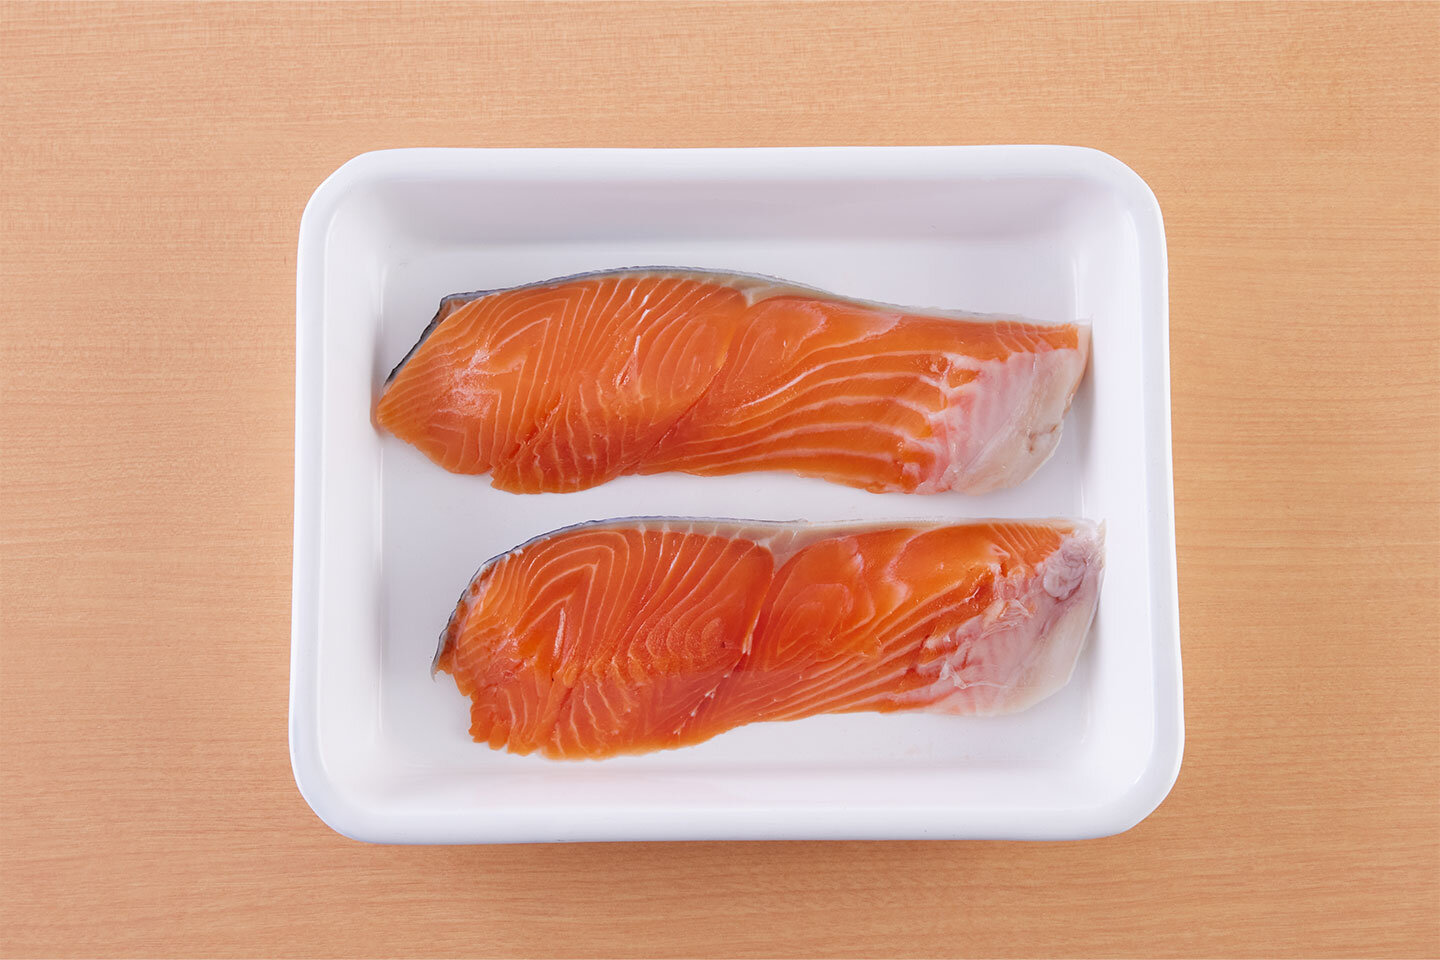 ぶりの代わりに、生鮭の切り身でも同じように作れます。ぶりとはまた違った味わいです。